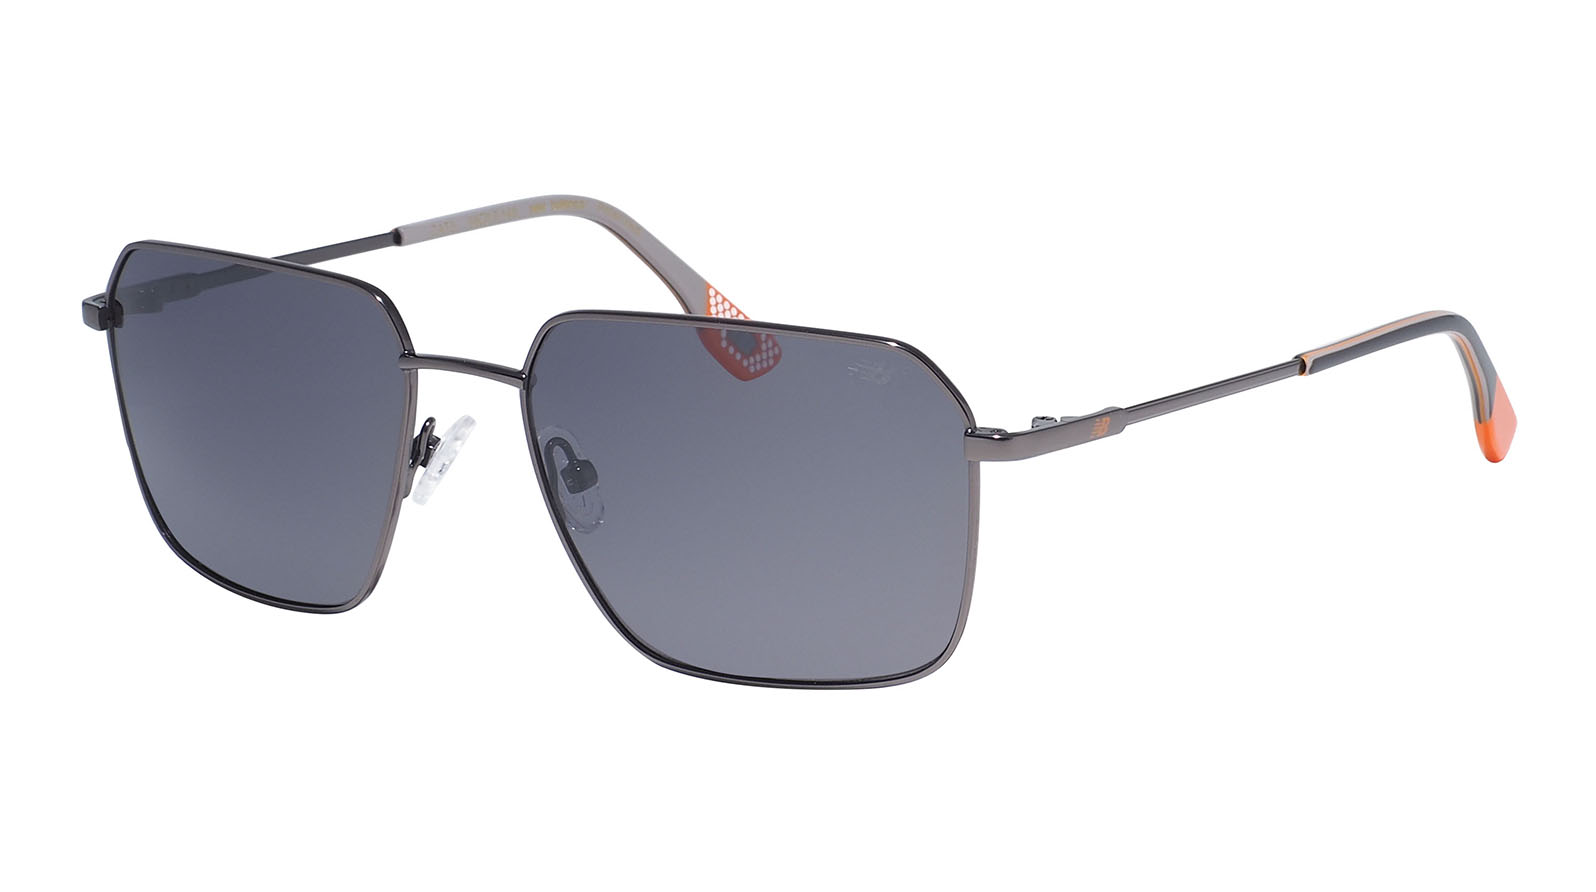 New Balance 6077 1 grand voyage солнцезащитные очки для водителя с поляризацией